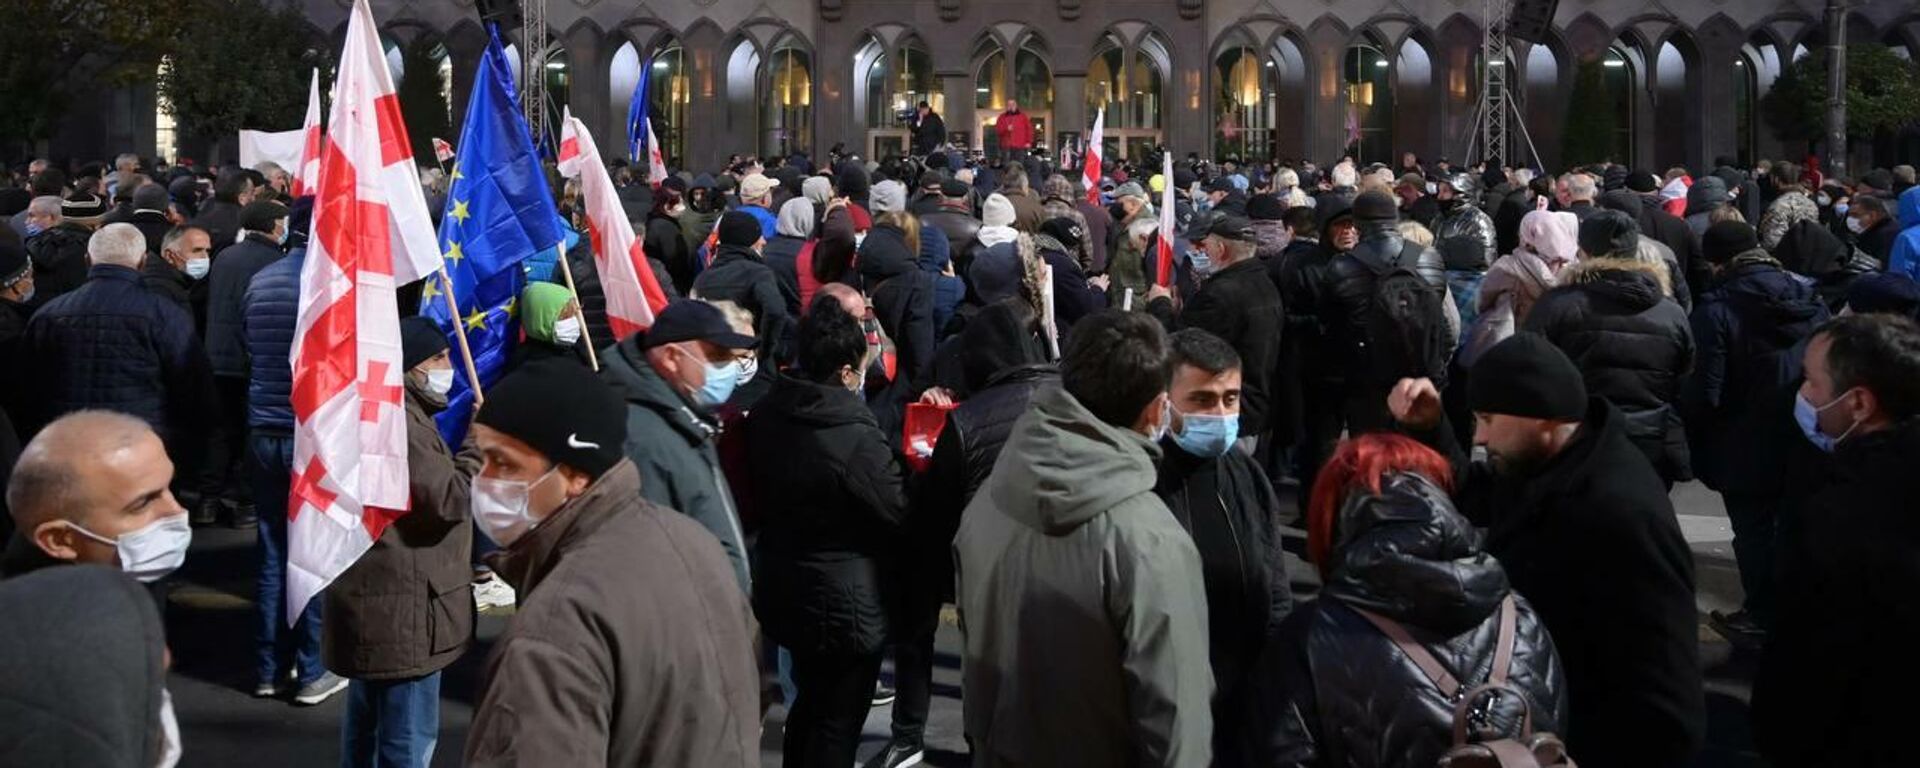 Акция протеста сторонников оппозиции и ЕНД в поддержку Саакашвили 19 ноября 2021 года - Sputnik Грузия, 1920, 19.11.2021